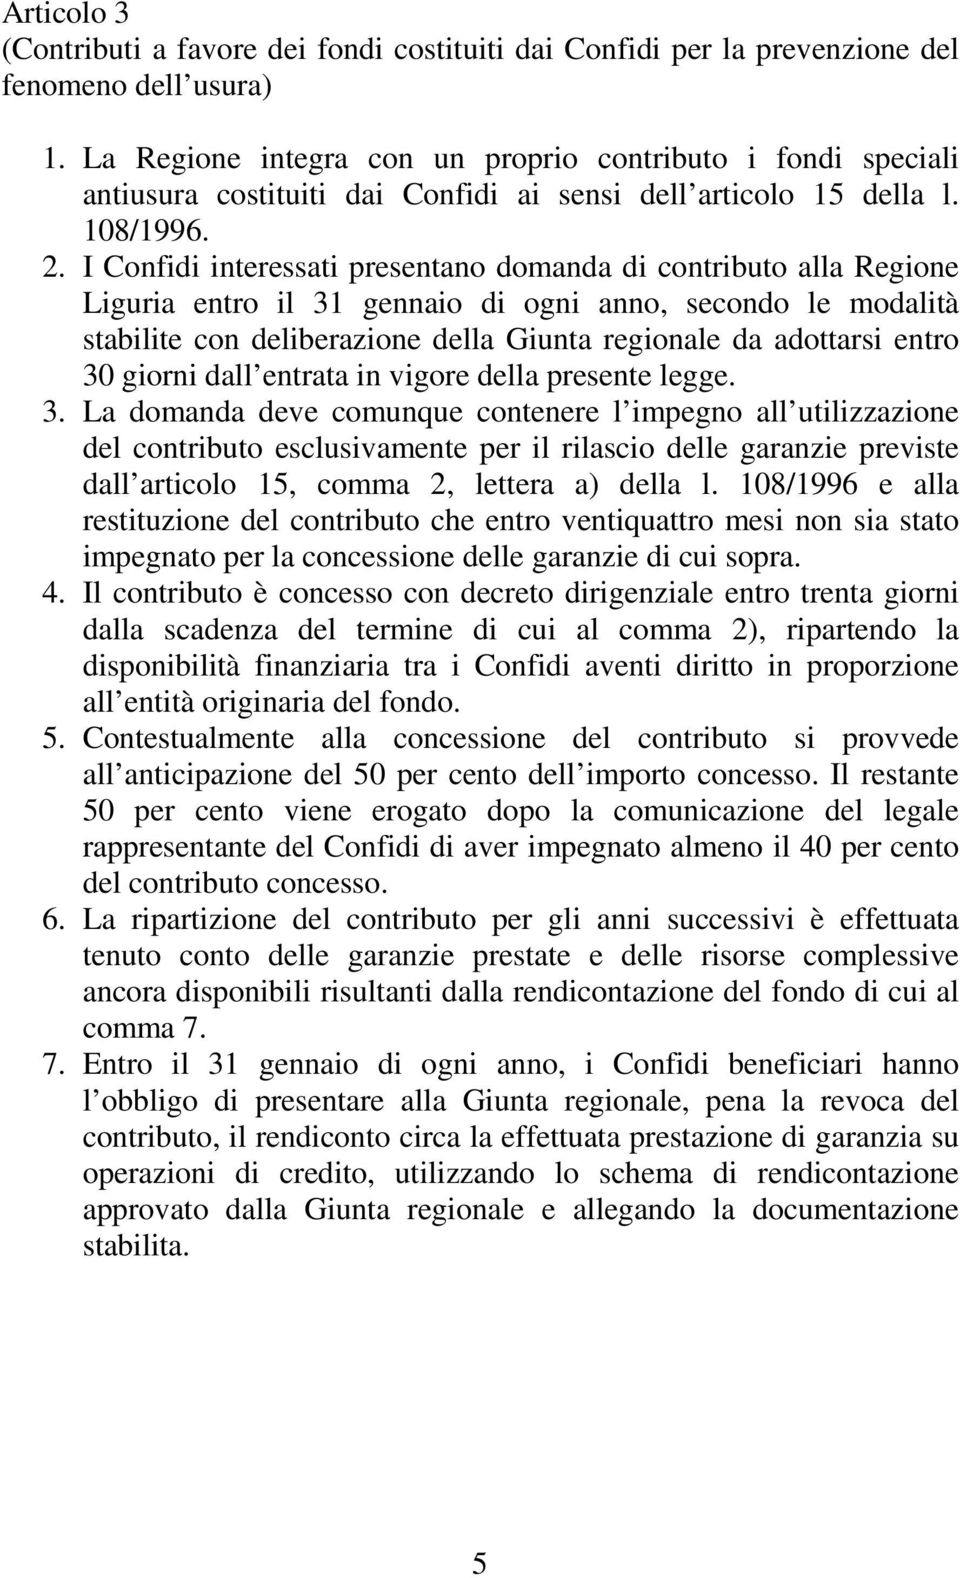 I Confidi interessati presentano domanda di contributo alla Regione Liguria entro il 31 gennaio di ogni anno, secondo le modalità stabilite con deliberazione della Giunta regionale da adottarsi entro